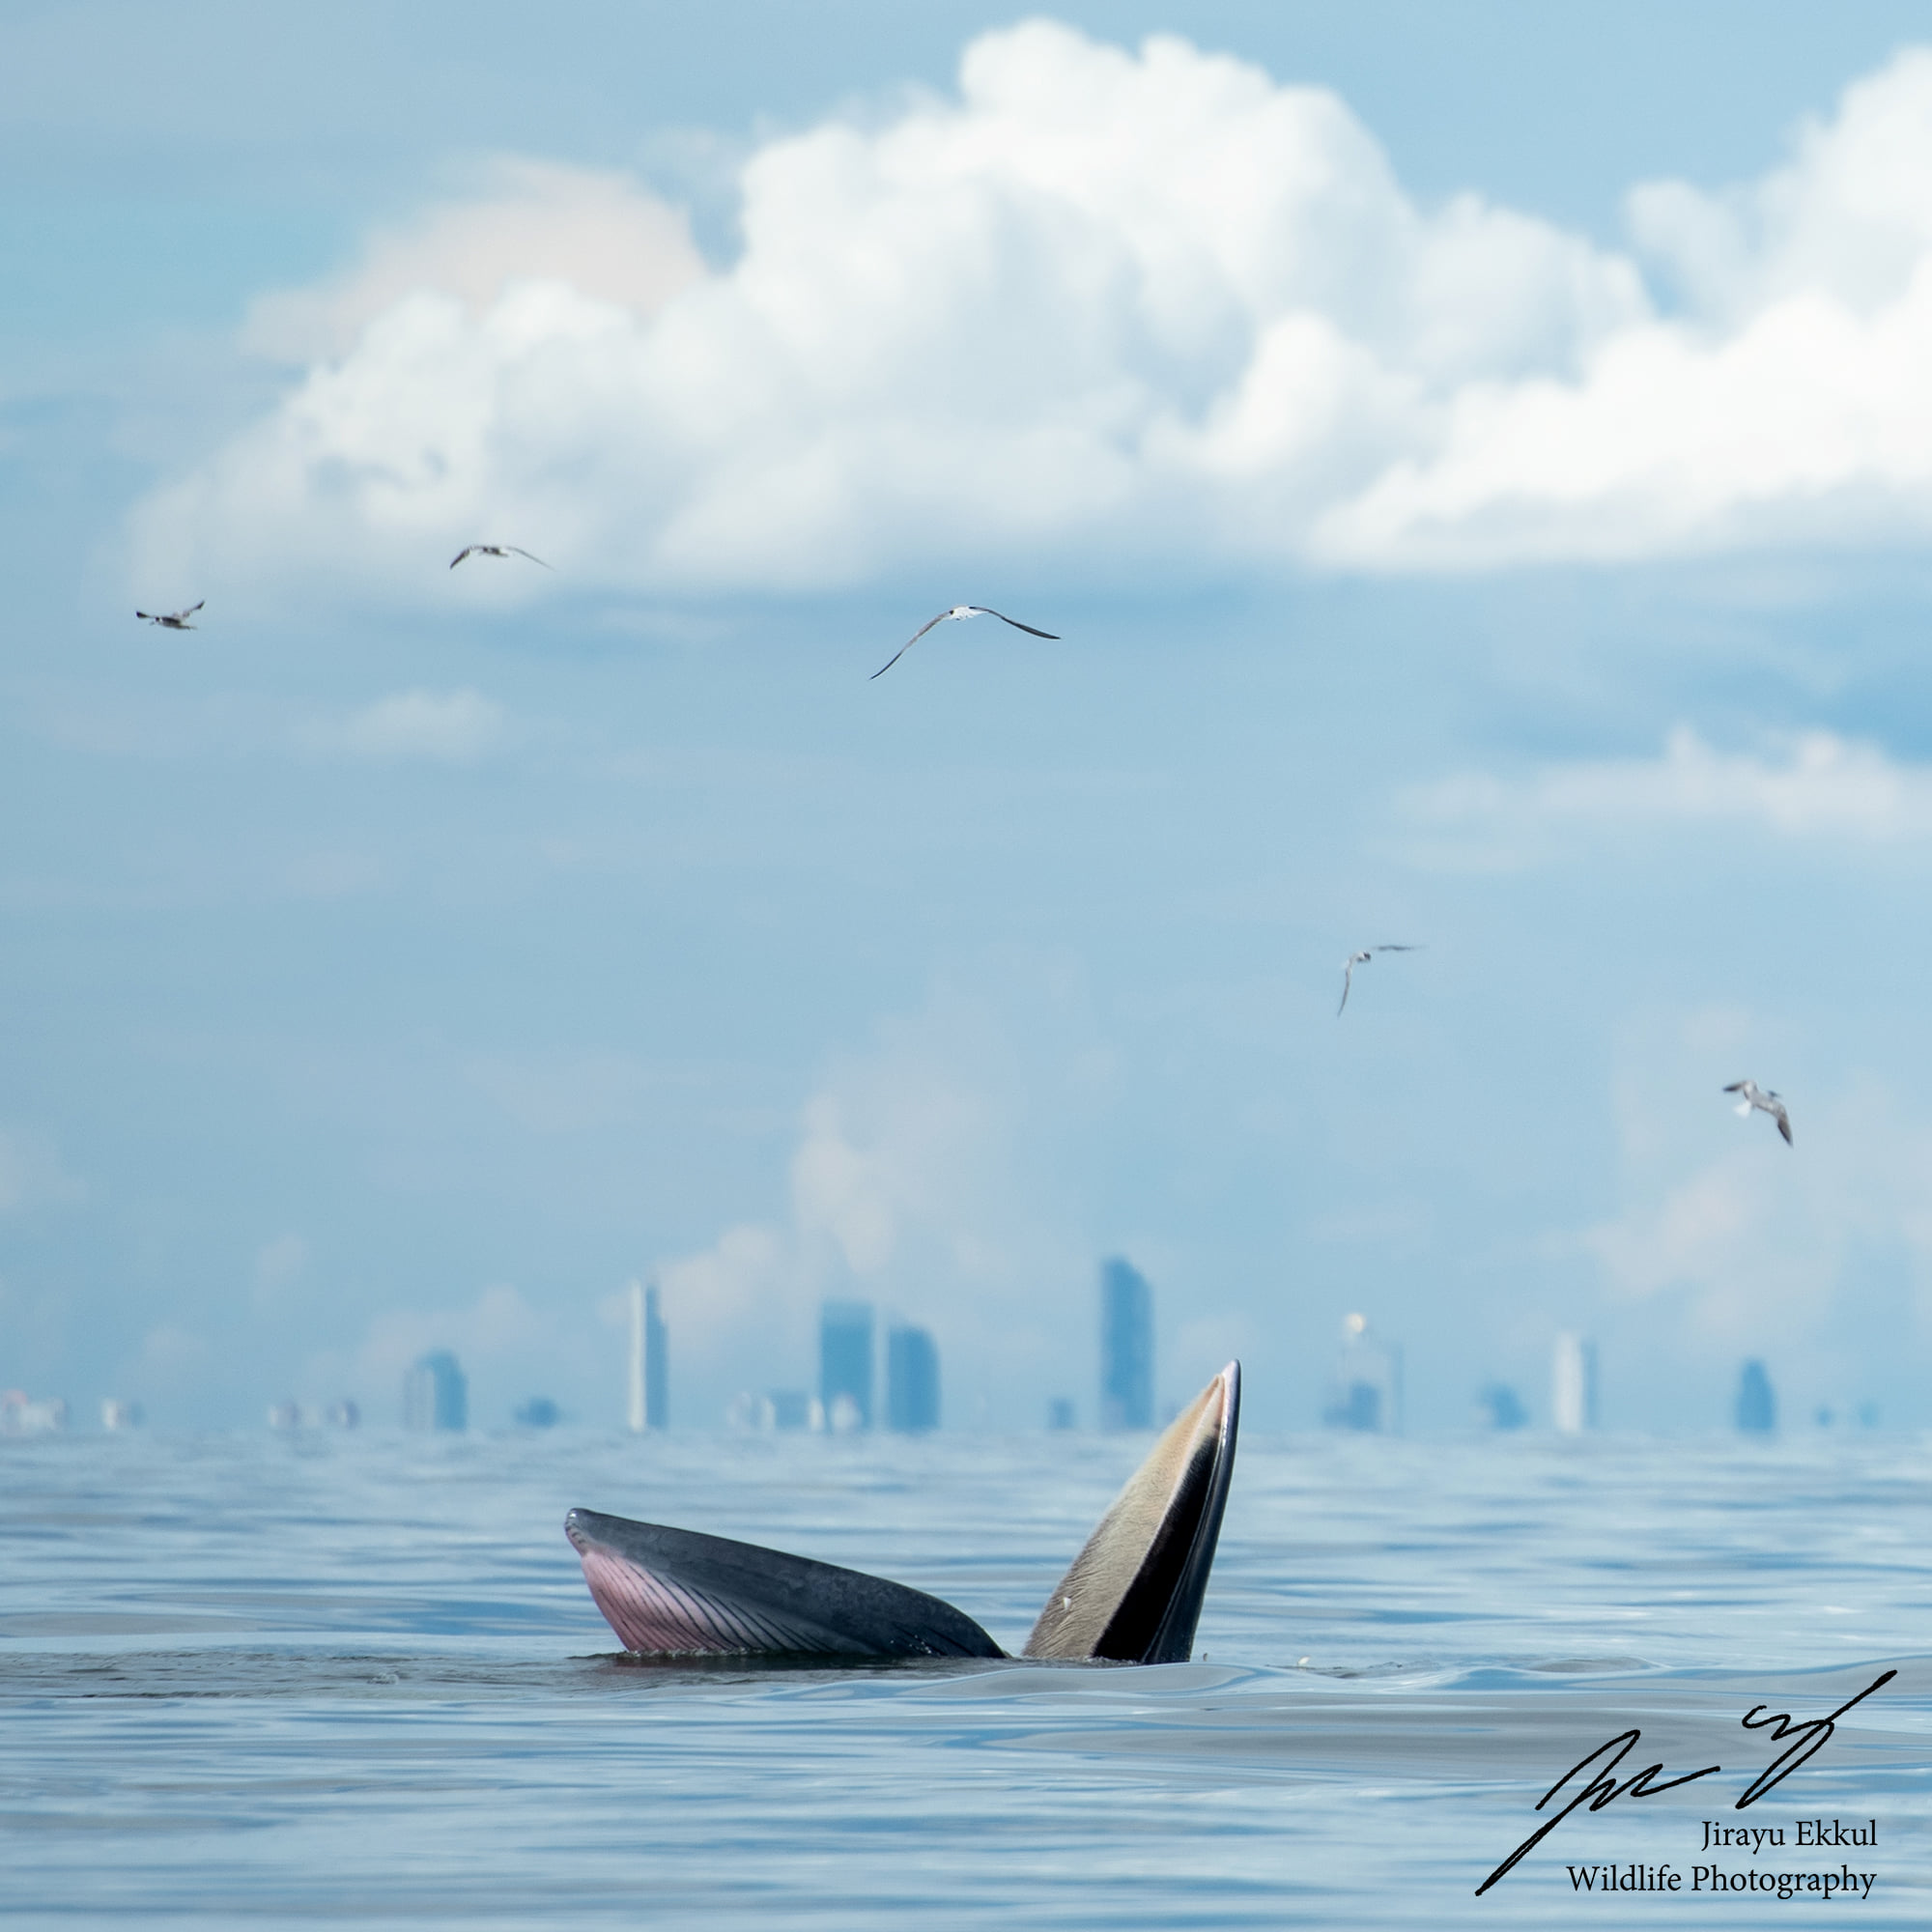 ภาพหาดูยาก! วาฬบรูด้า โผล่อ้าปาก พร้อมฉากหลังตึกสูงกรุงเทพฯ